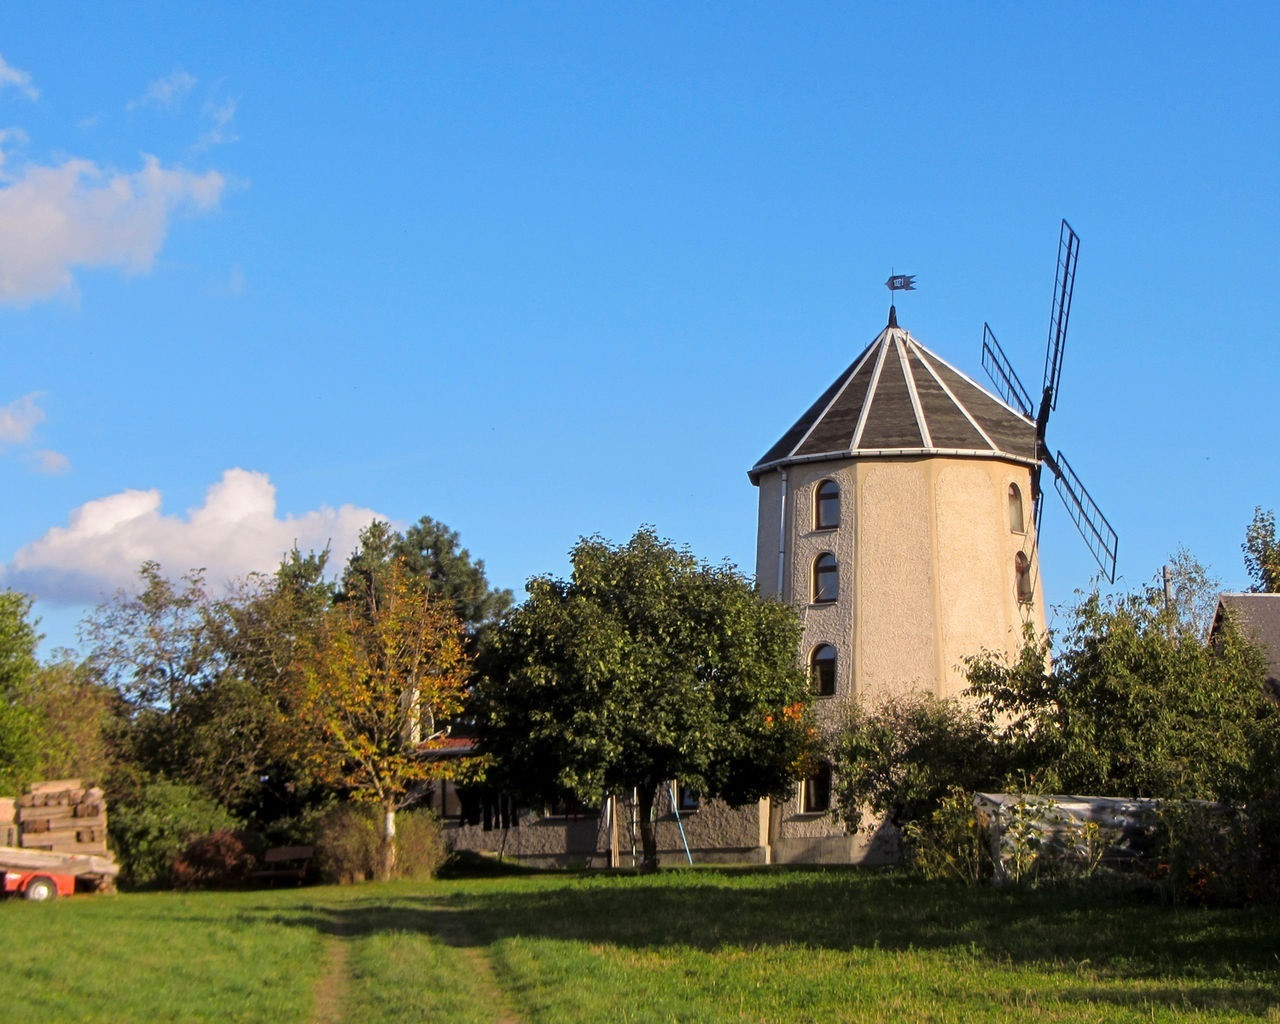 Die Windmühle bei Zottewitz wird heute privat als Wohnhaus genutzt. Teile der Technik sind ausgebaut und noch zu besichtigen.